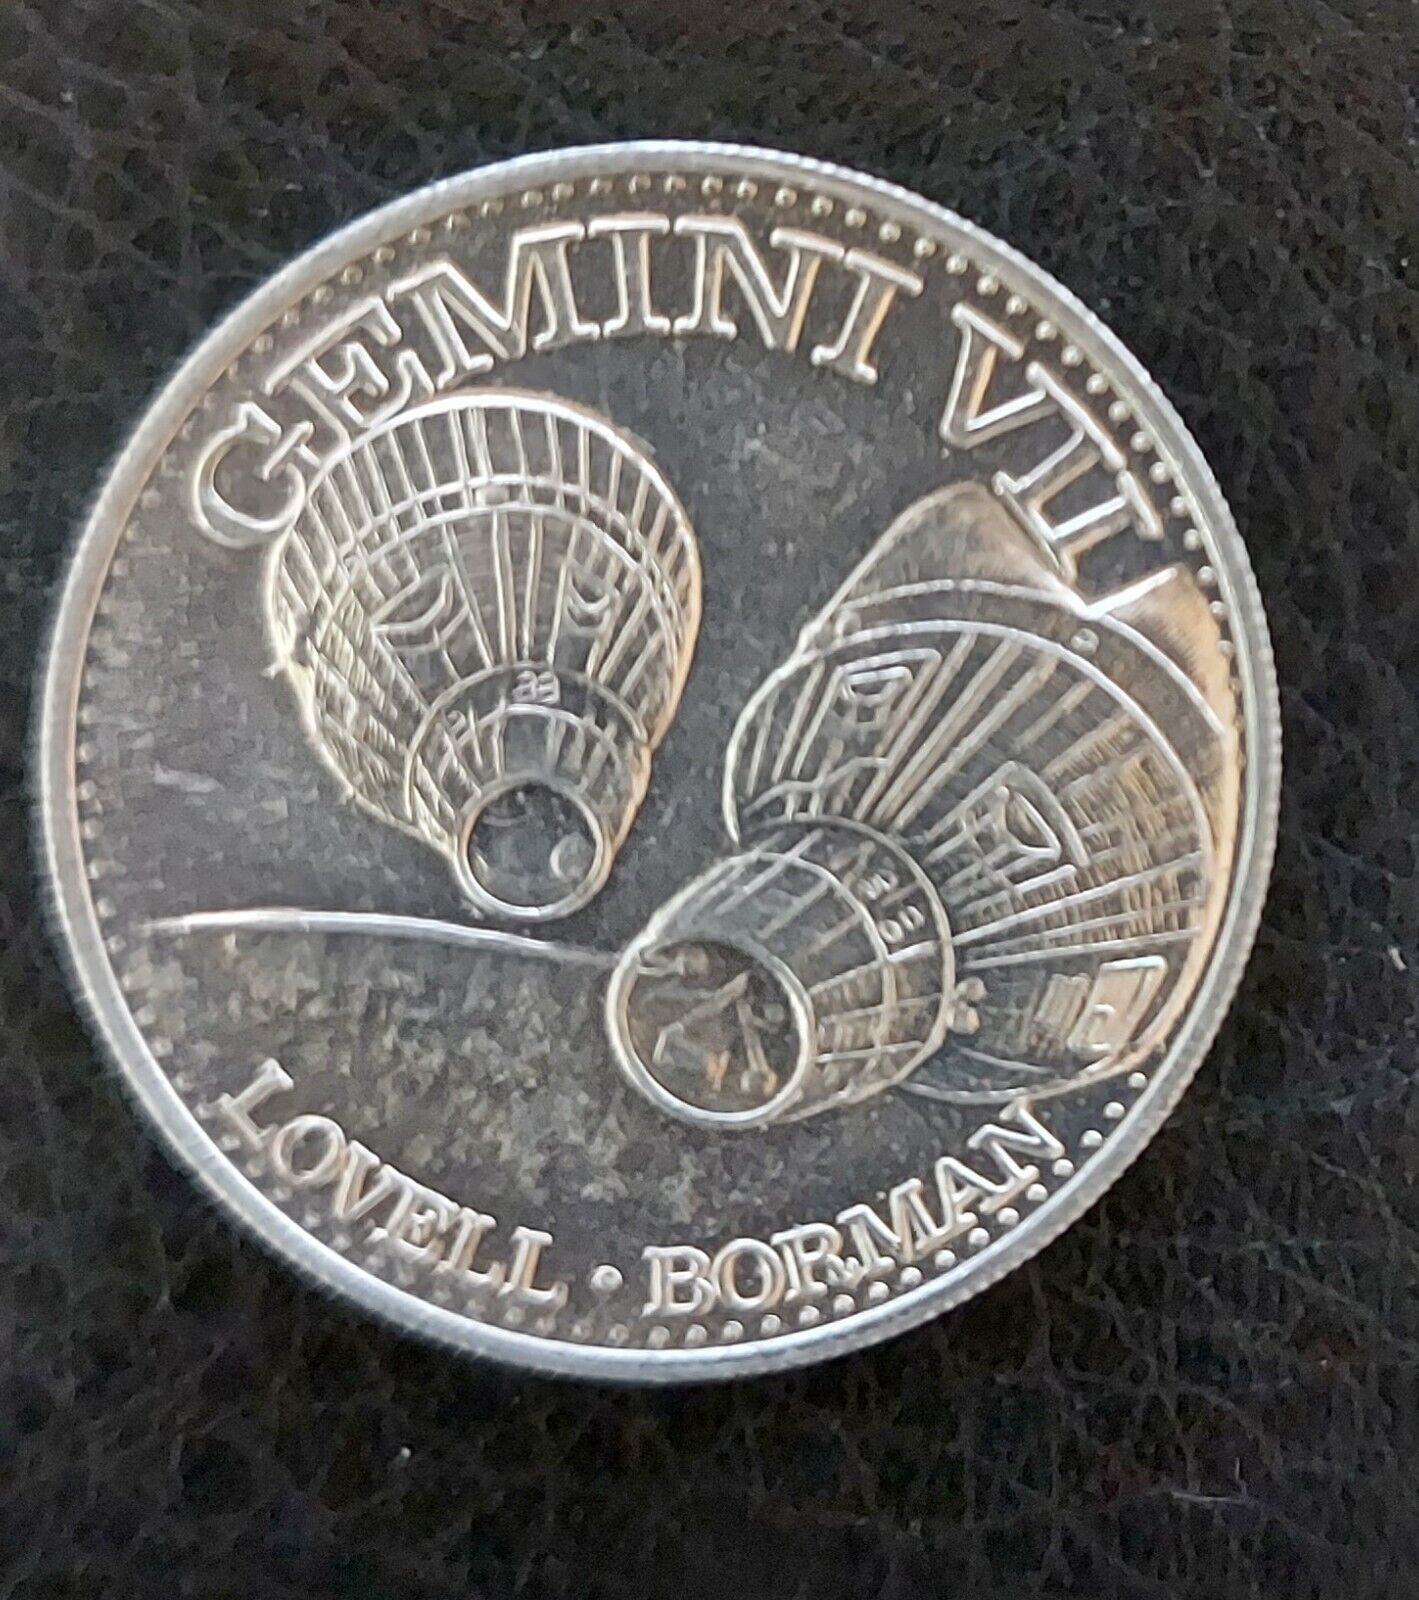 GEMINI VII Mission NASA Vintage Space Program Medallion Medal Challenge Coin